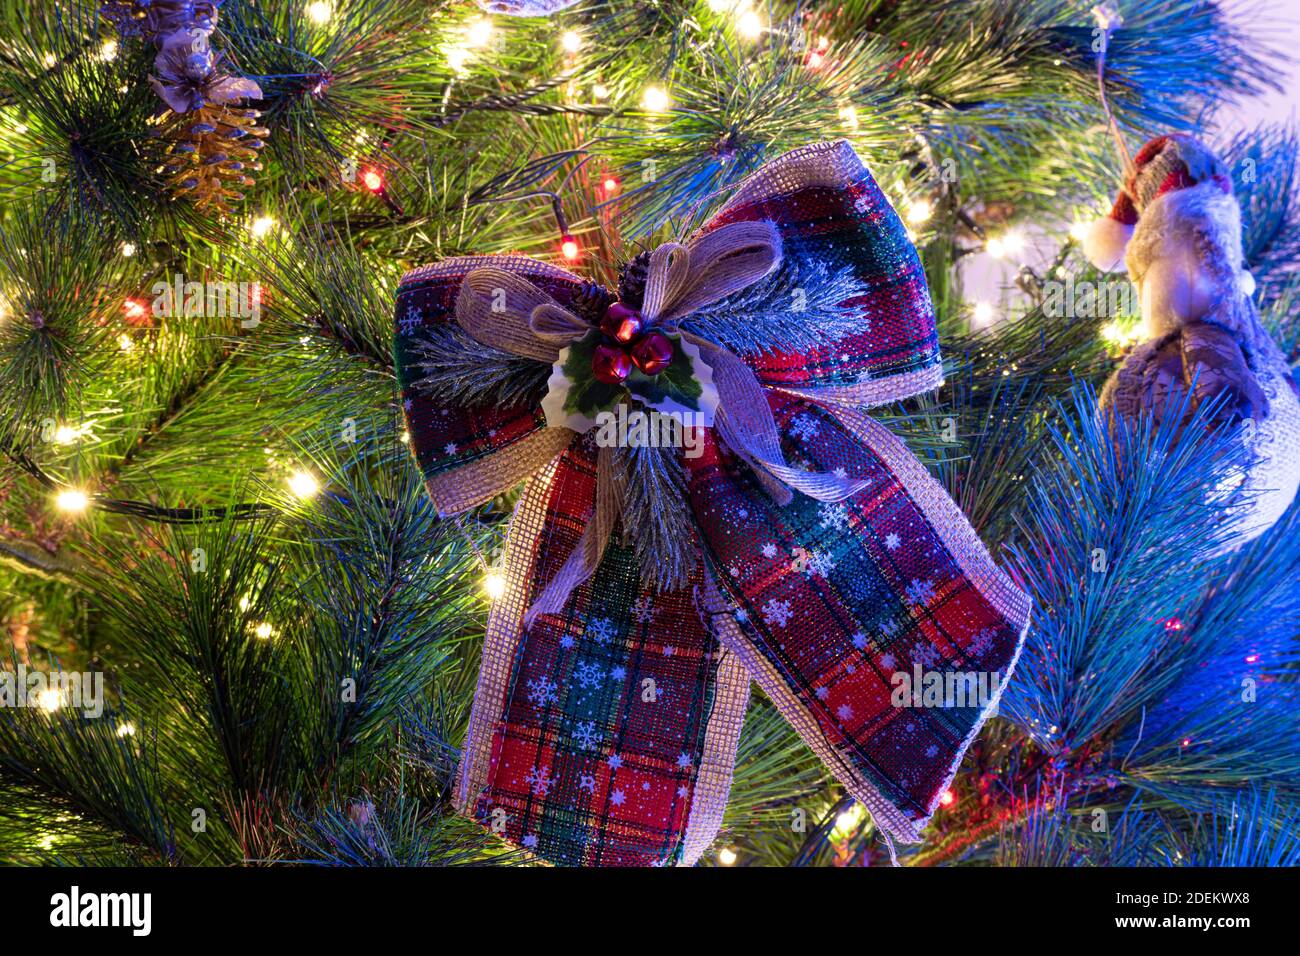 Albero di Natale decorato e creche su uno sfondo sfocato e si possono vedere le luci e i colori caldi che danno un vero spirito e umore Foto Stock